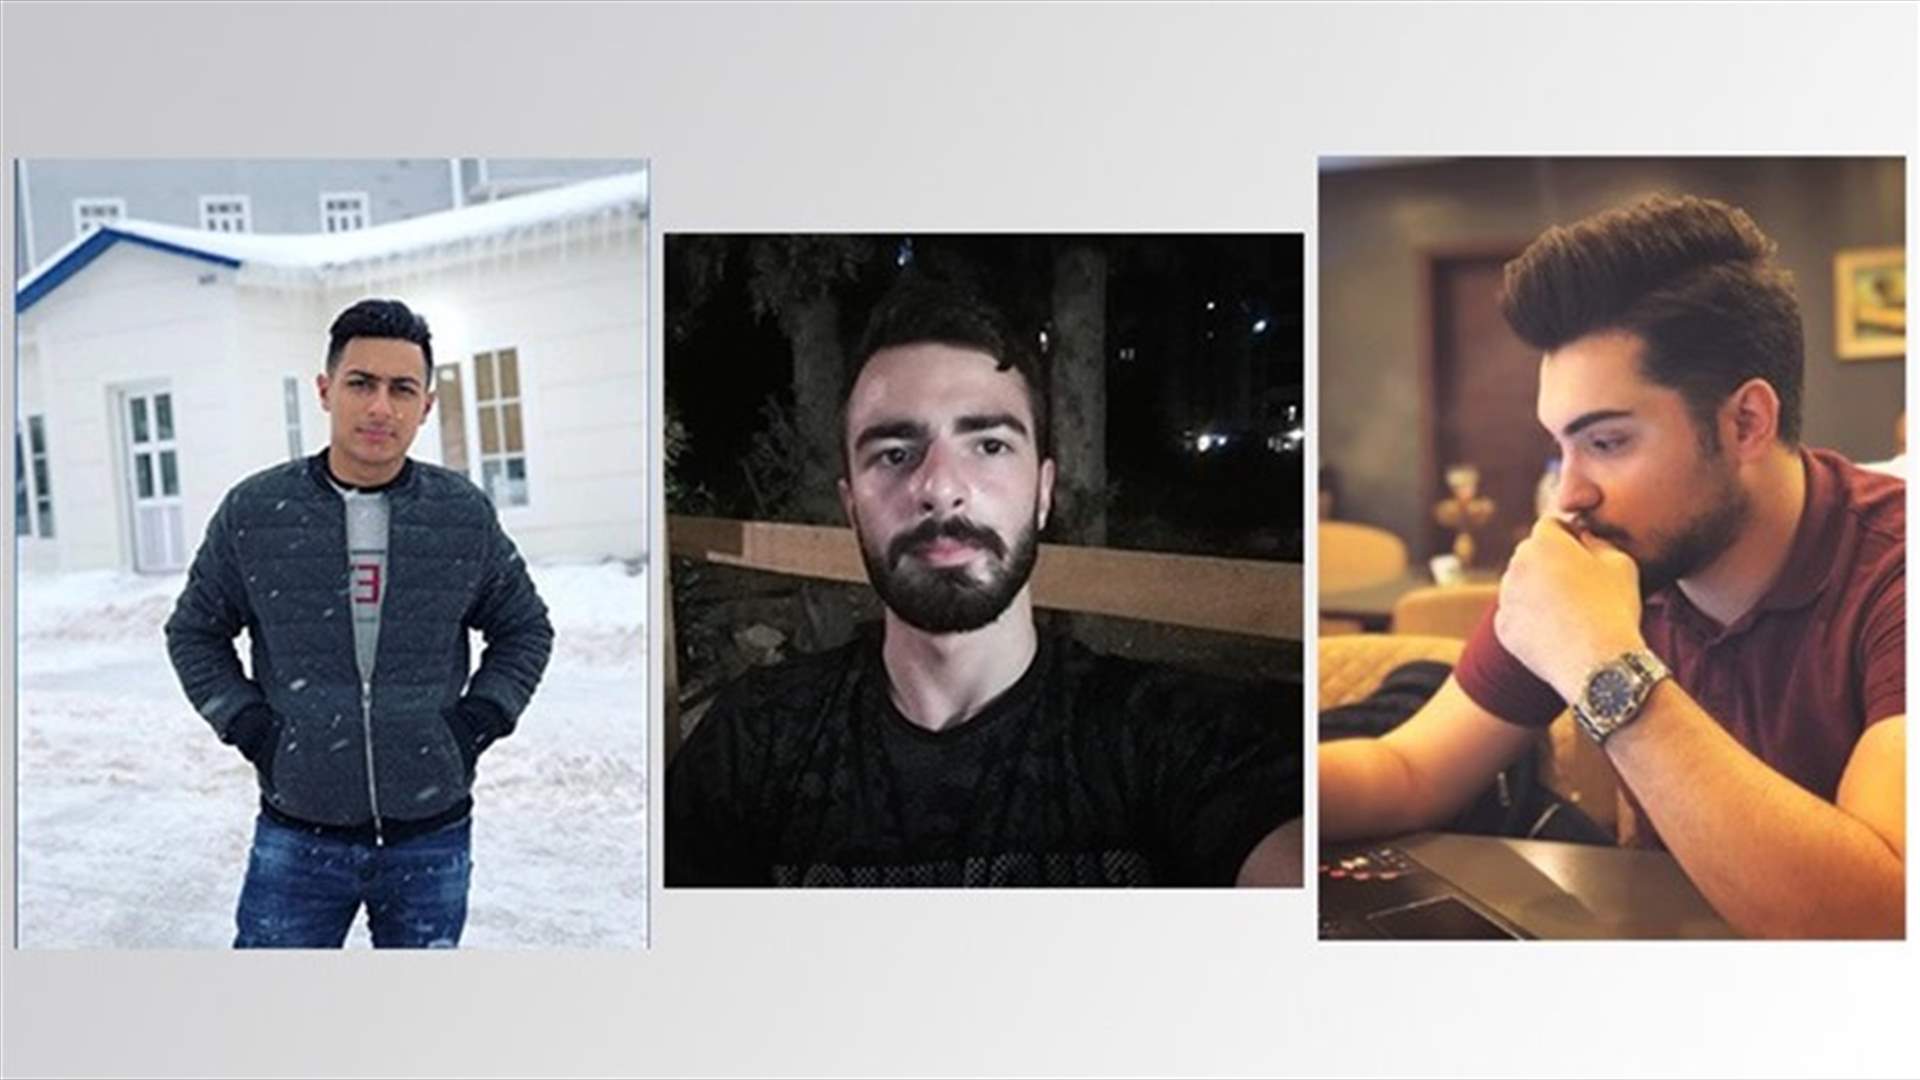 إنجاز لبناني تكنولوجي جديد أبطاله 3 من طلاب اللبنانية